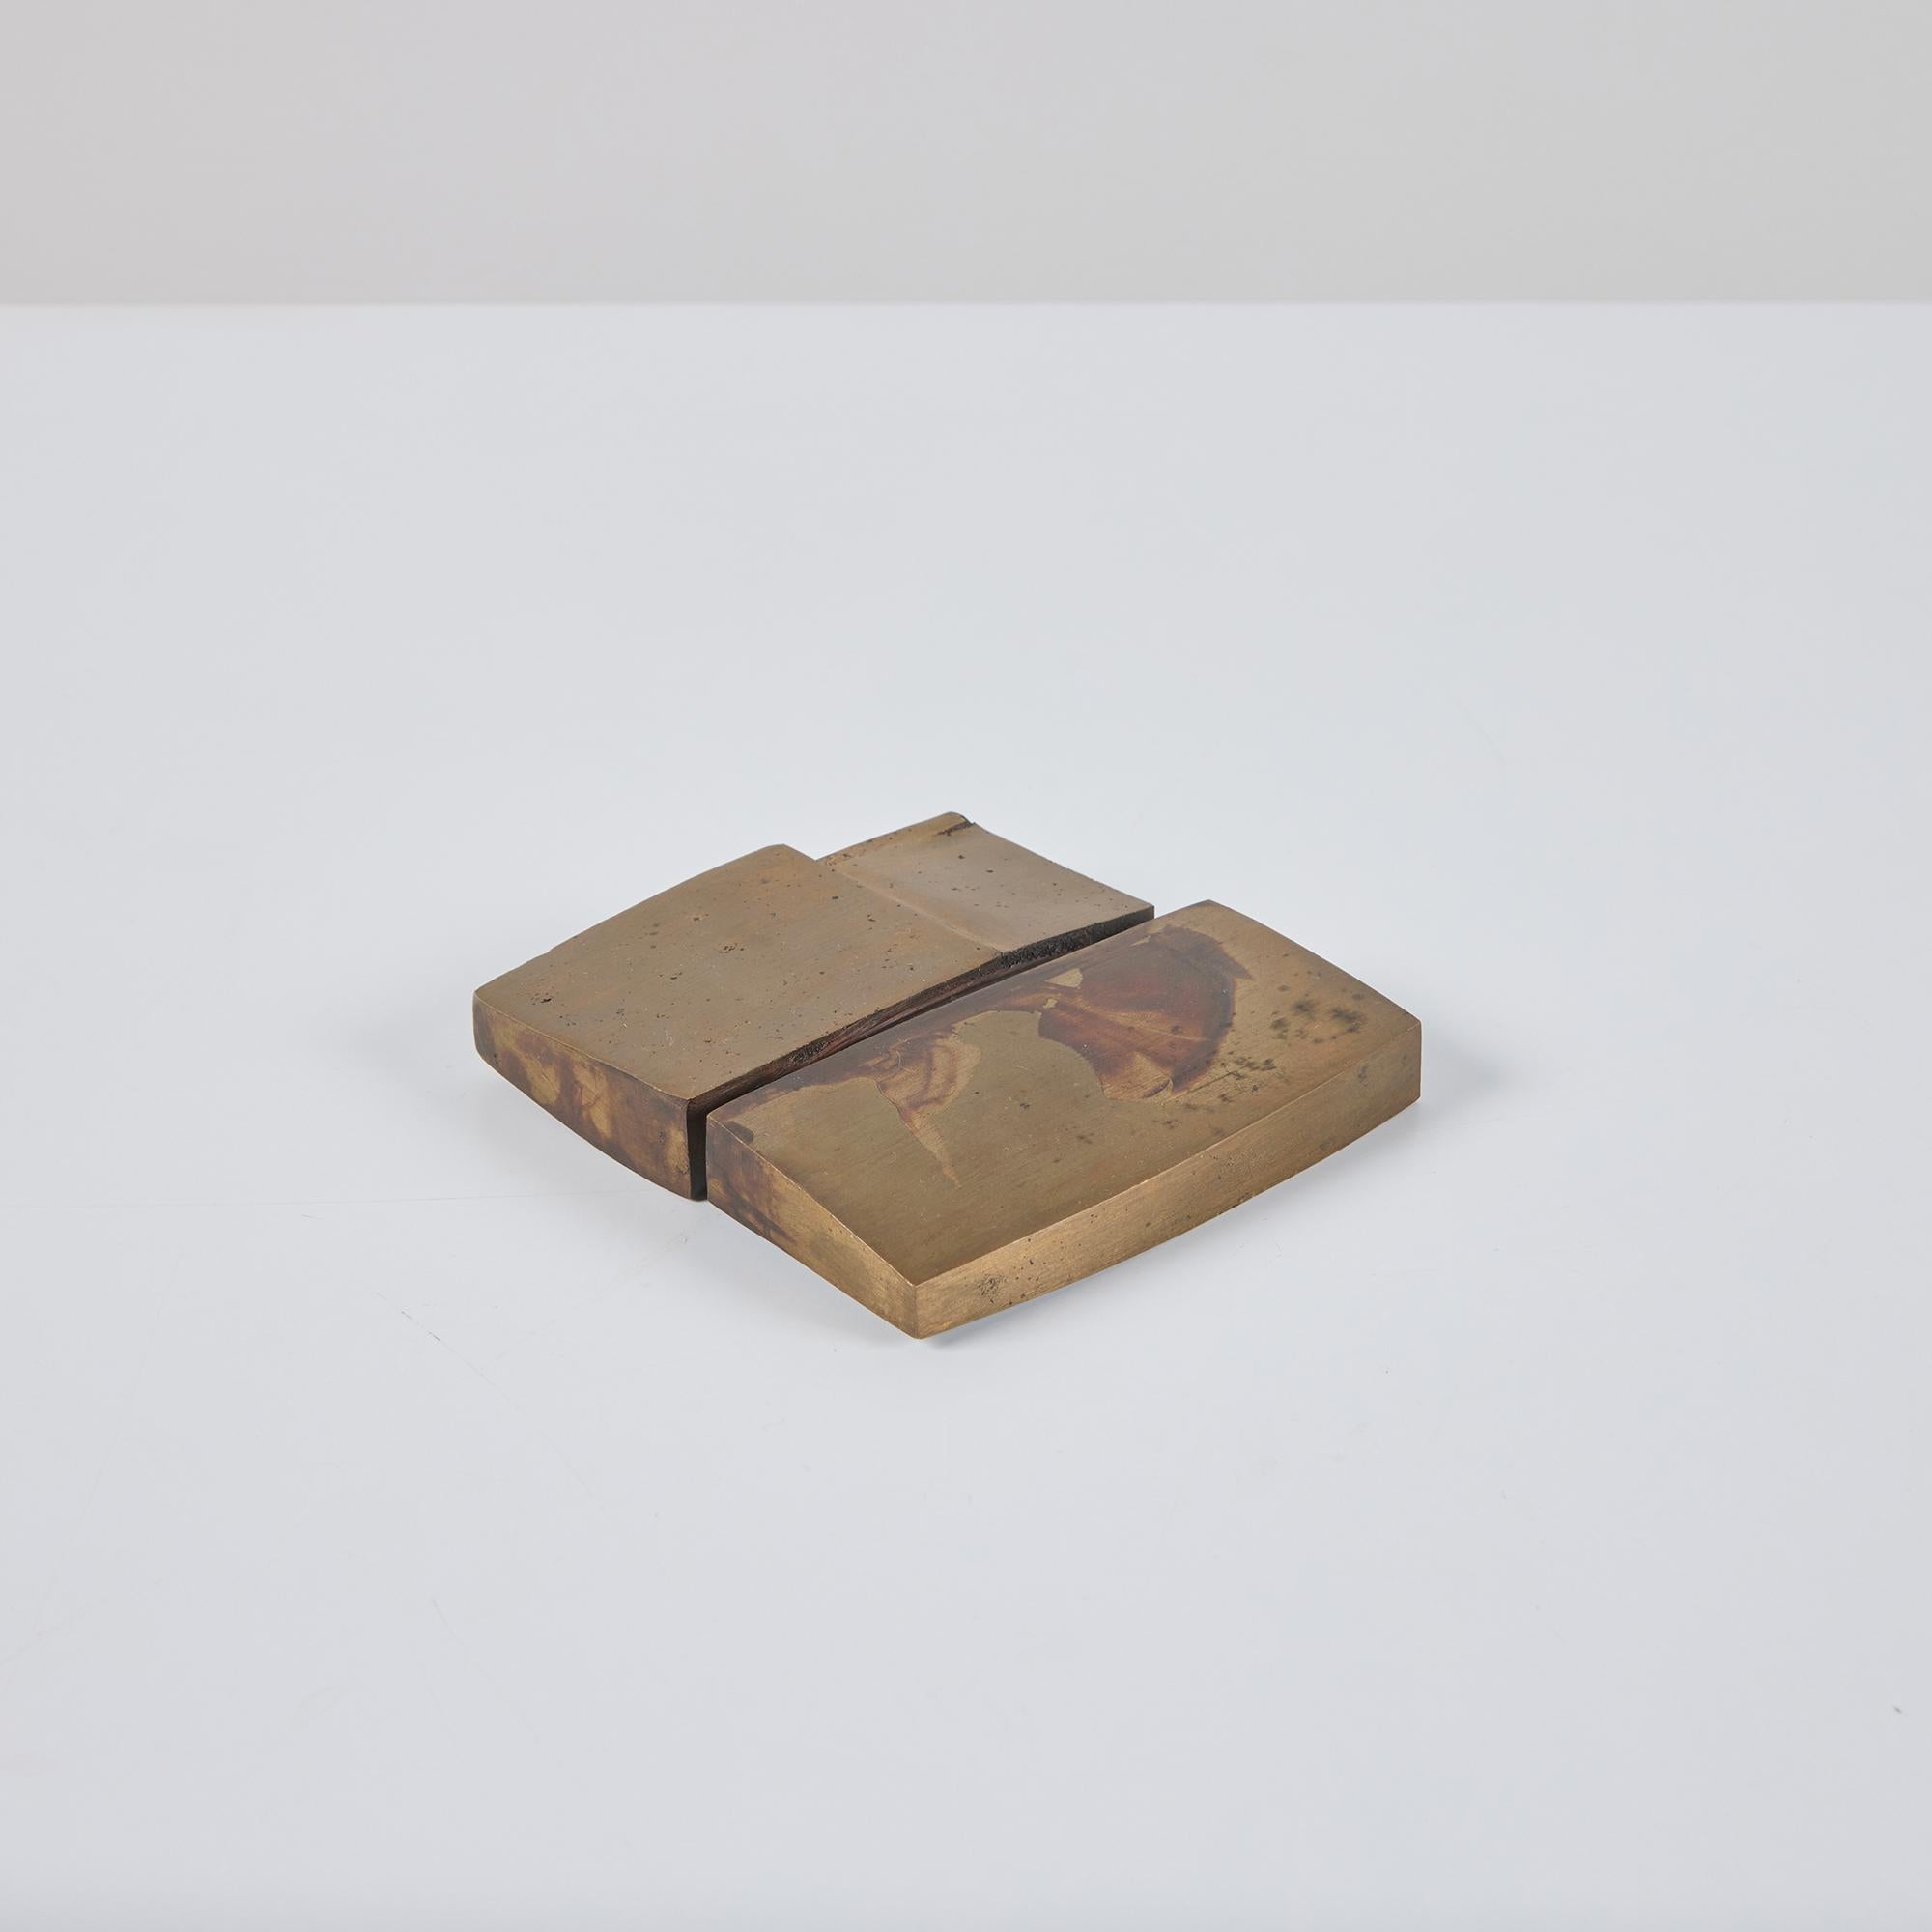 Abstrakte Skulptur oder Briefbeschwerer aus Messing des Künstlers David L. Deming, ca. 1969, USA. Dieses gewichtige Objekt hat ineinandergreifende quadratische und rechteckige Formen. Er eignet sich hervorragend als Briefbeschwerer im Büro oder als